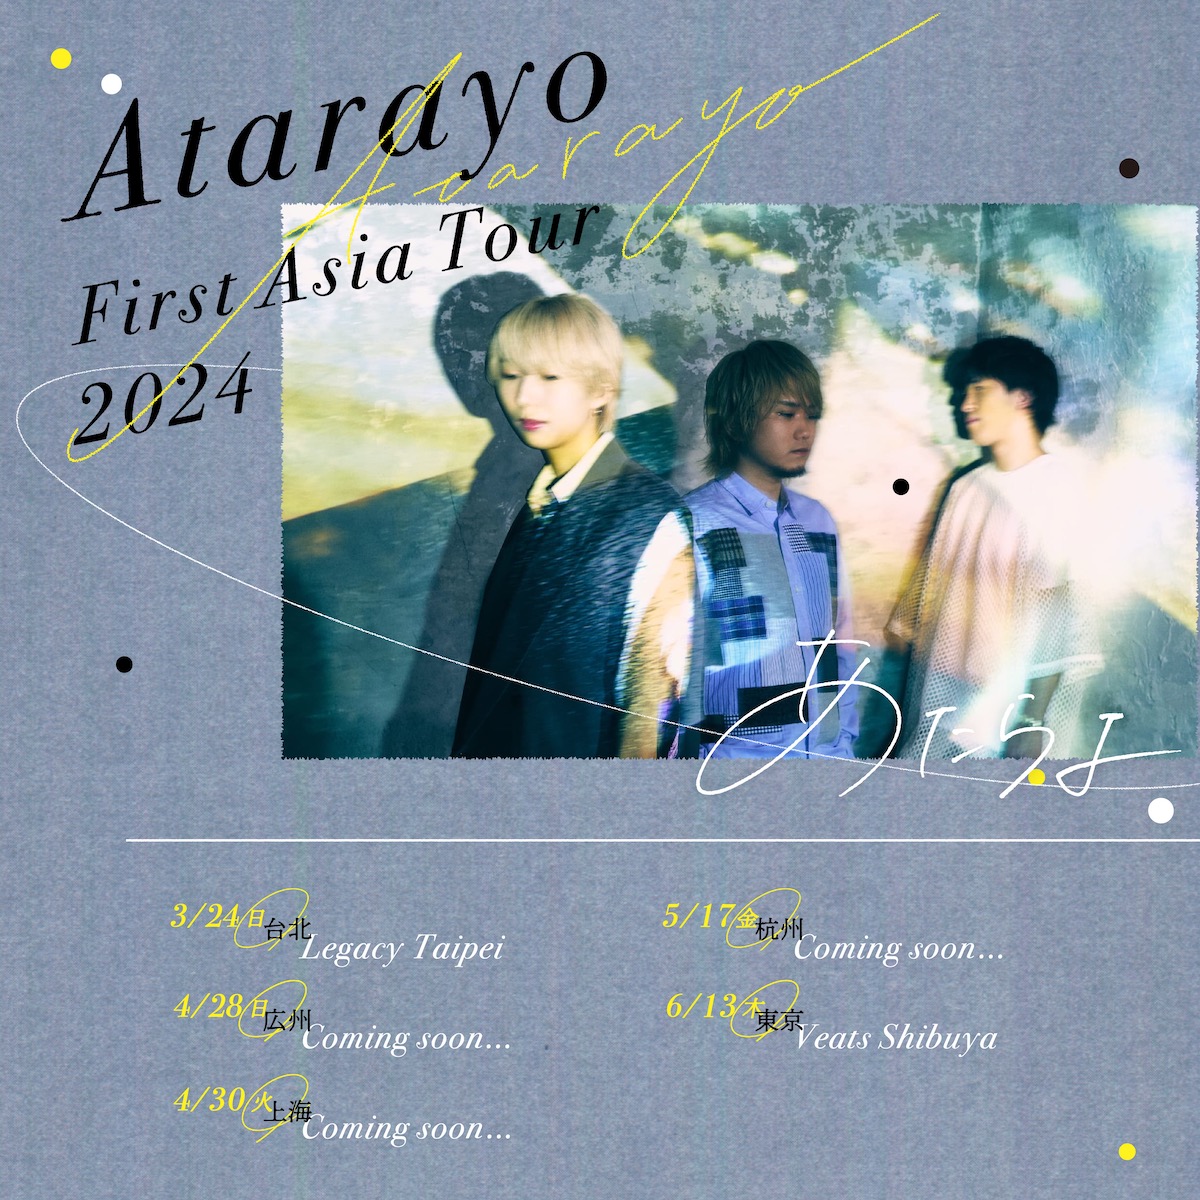 あたらよ『Atarayo First Asia Tour 2024』告知画像